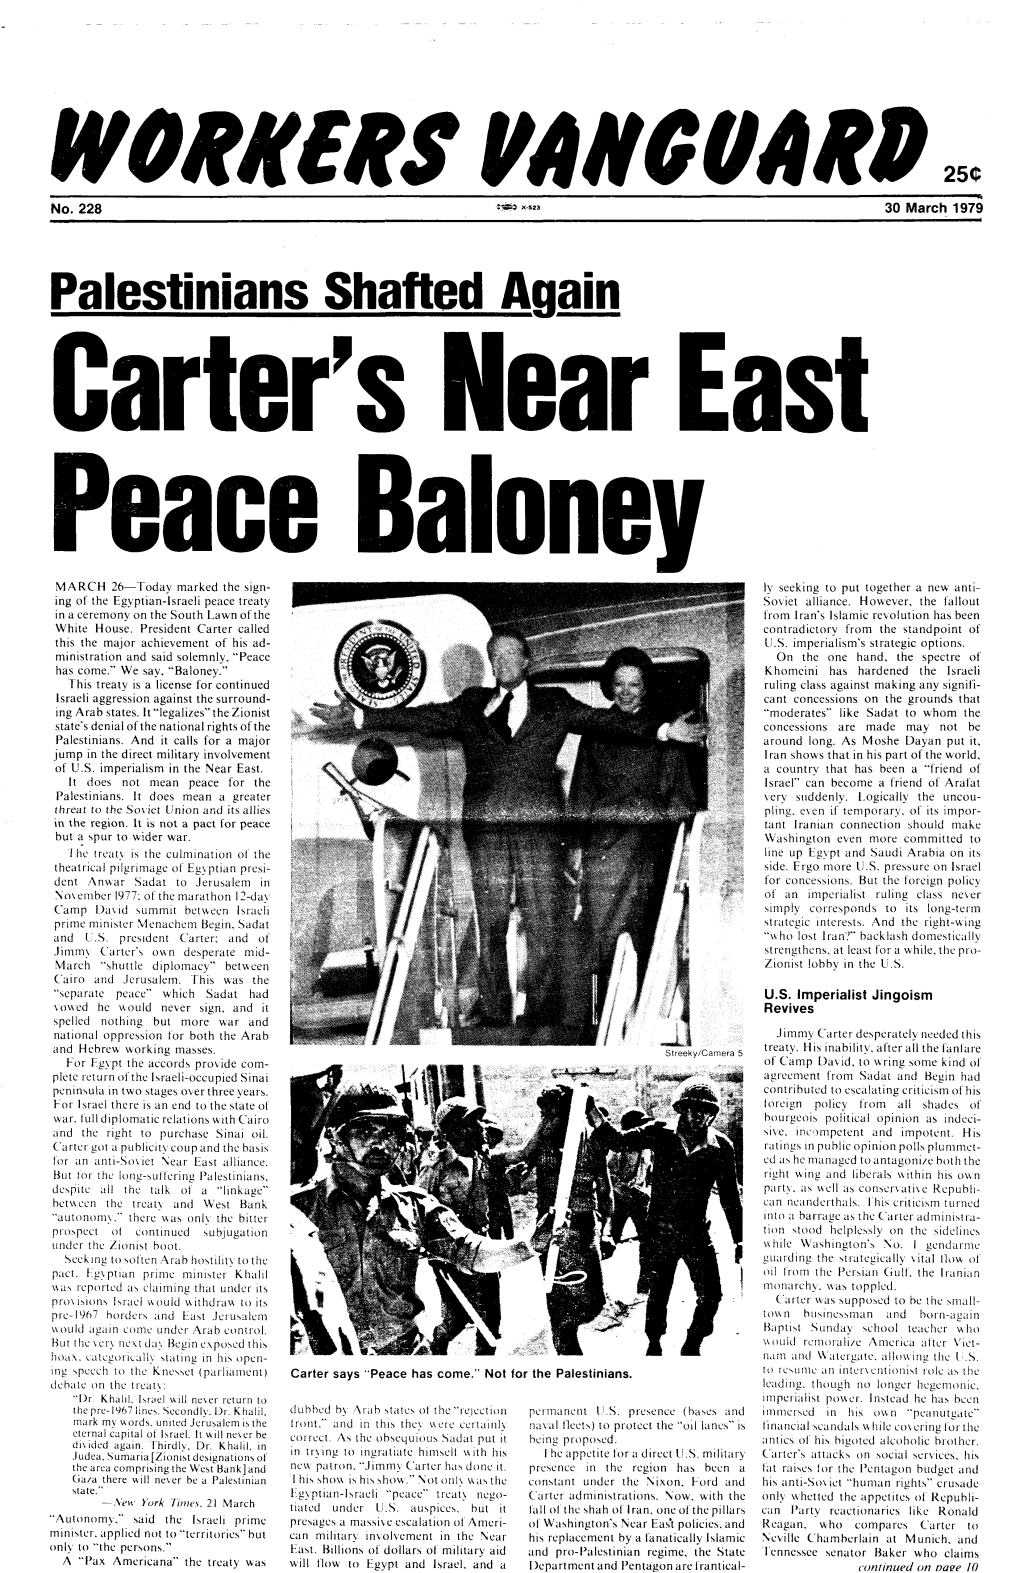 No. 228, March 30, 1979